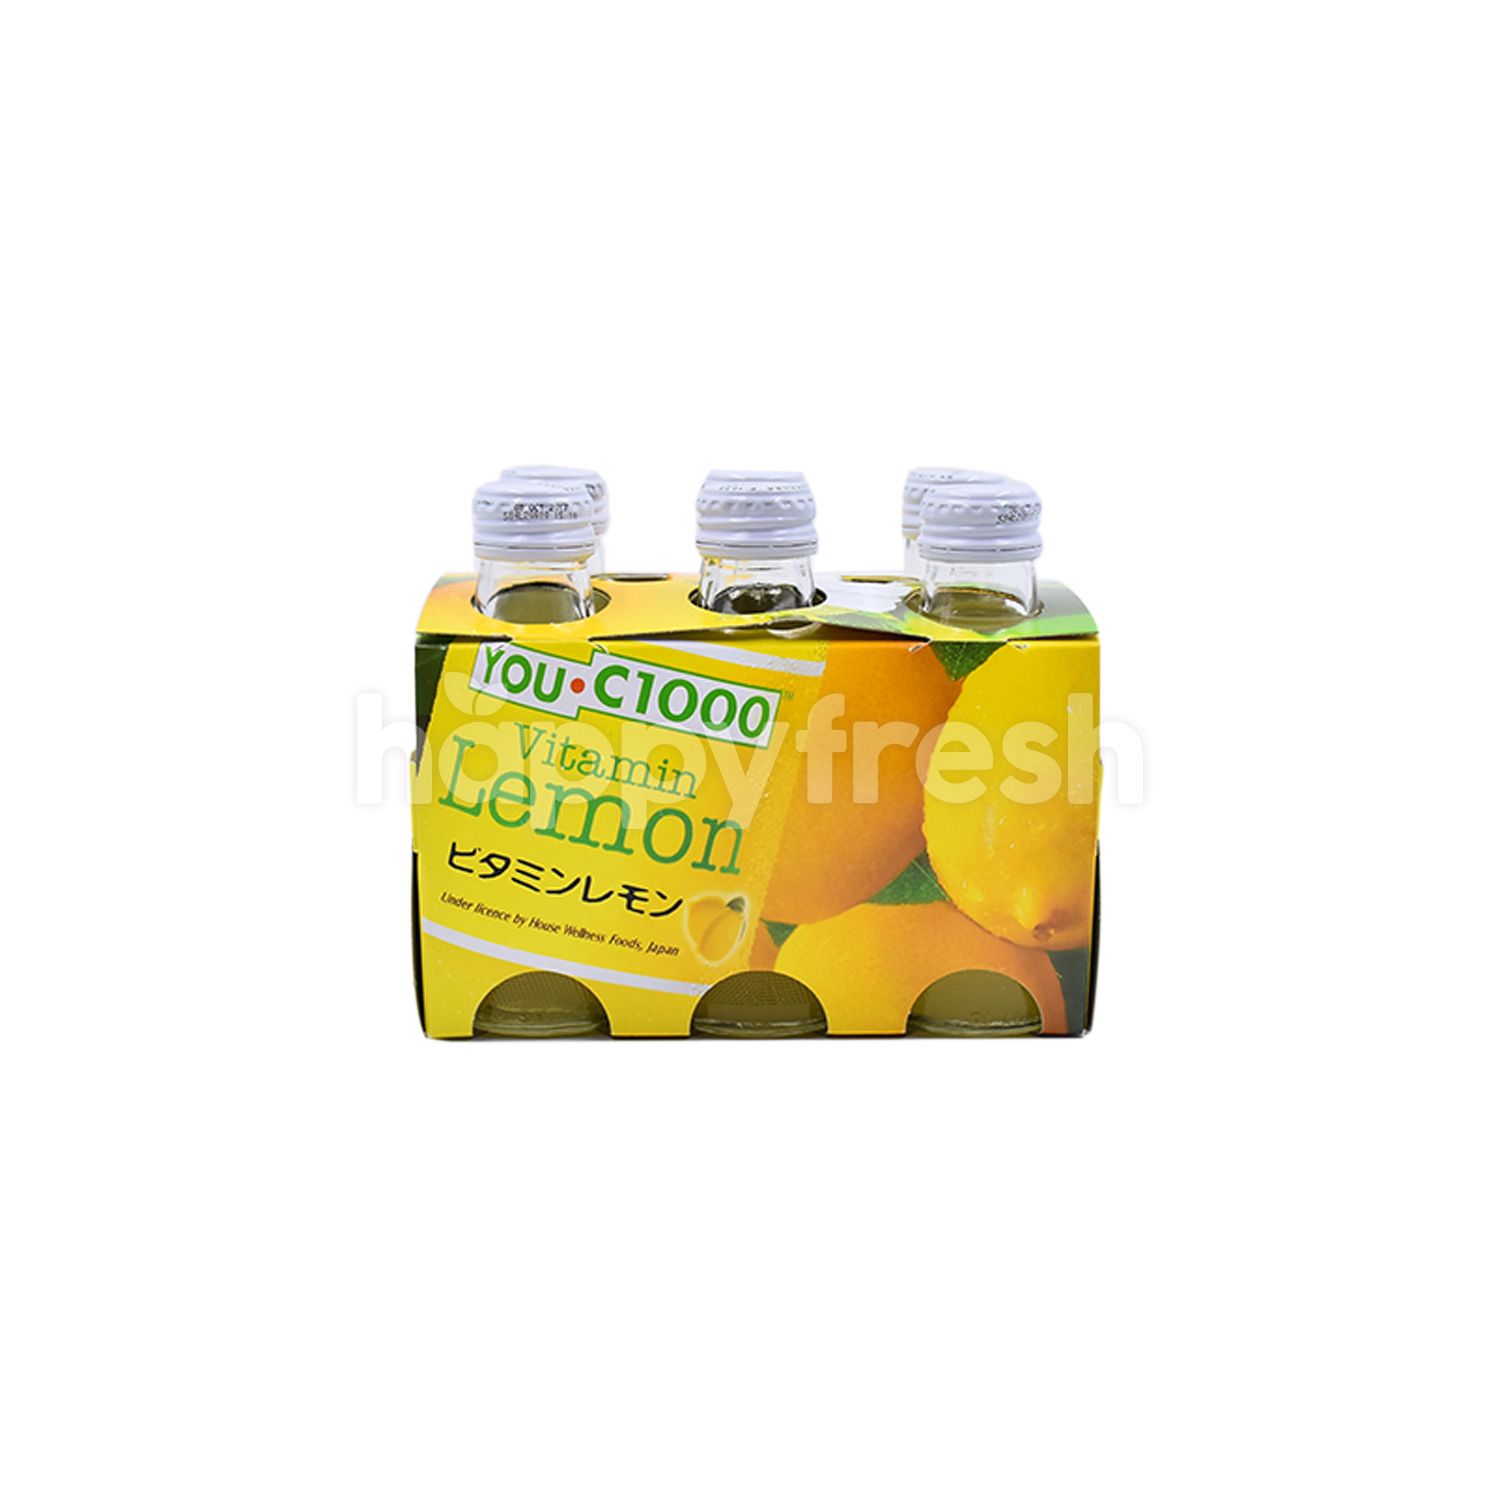 Beli You C1000 Vitamin Lemon Drink 6 Pieces Dari Aeon Happyfresh